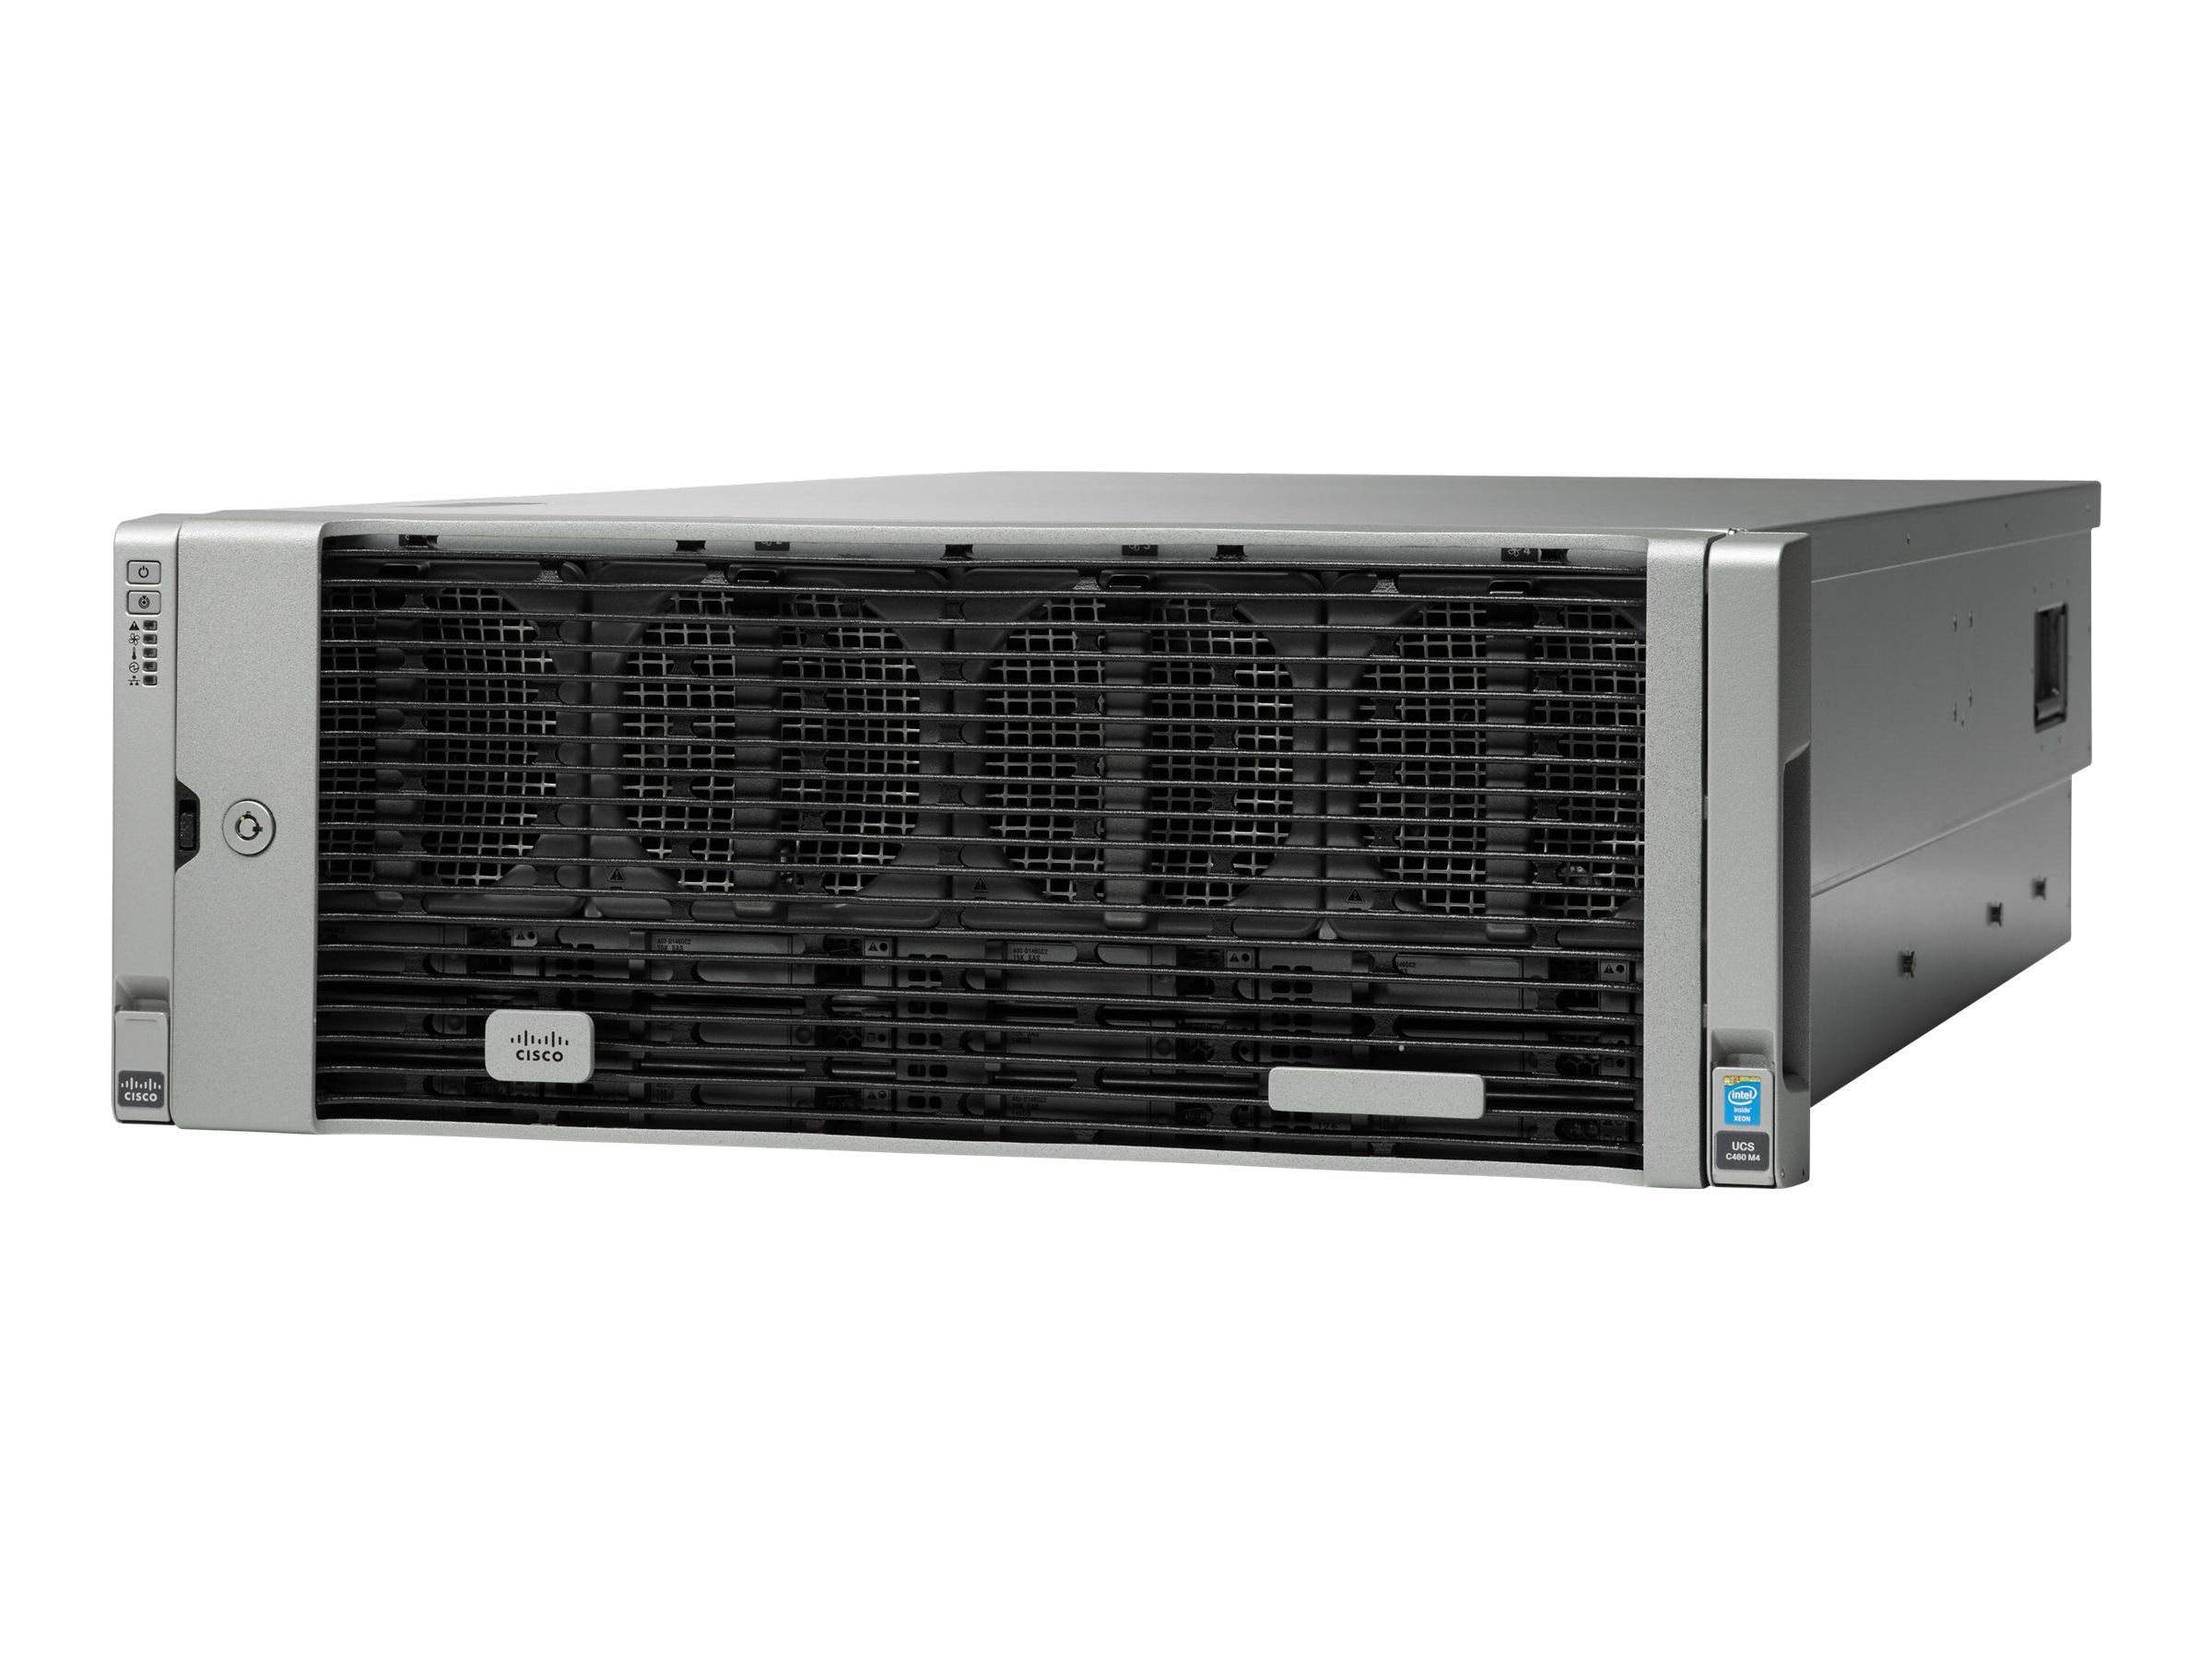 Cisco UCS C460 M4 4U Rack Server (4) Xeon E7-4880v2 1TB RAM (UCS 